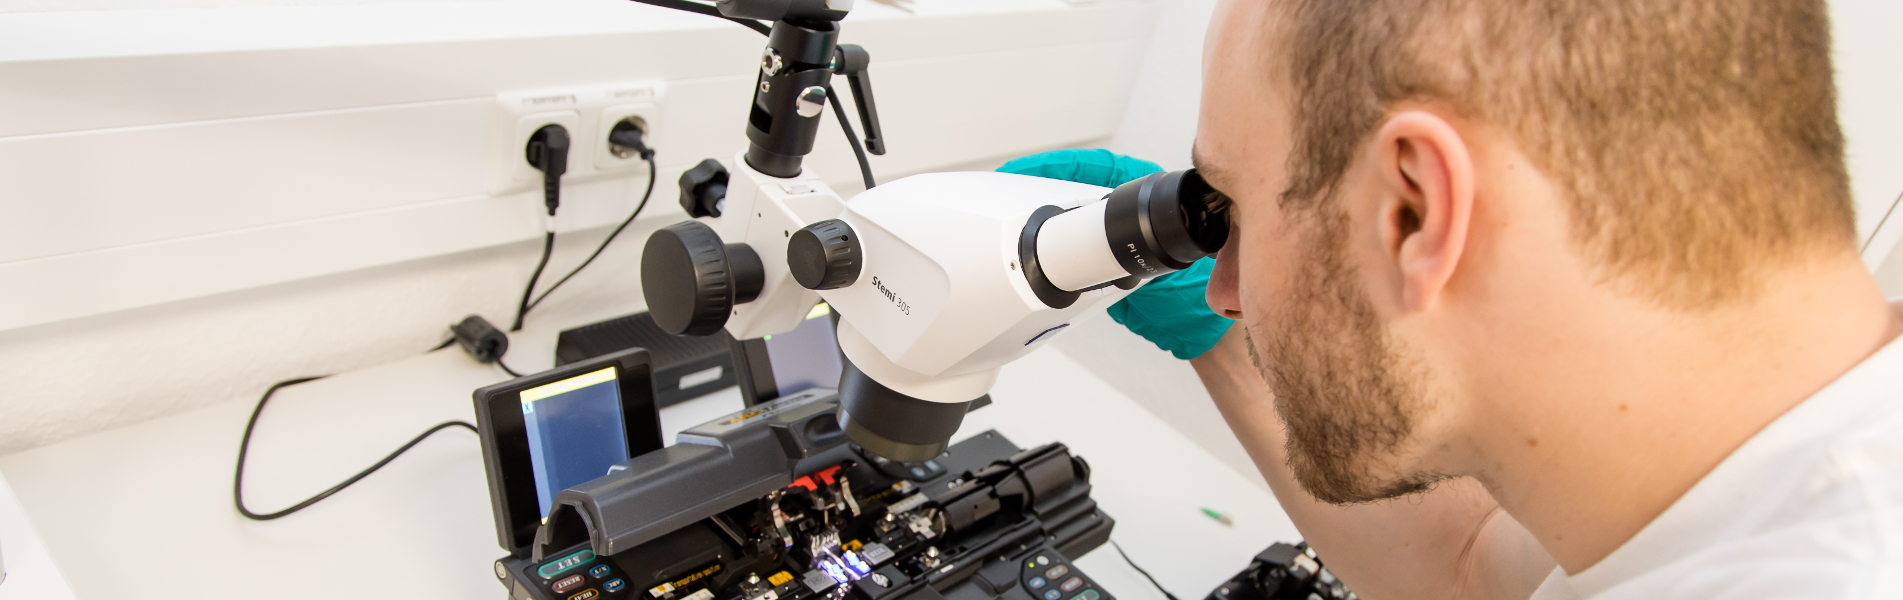 Foto: Ein Mitarbeiter schaut durch ein Mikroskop. Technische Kompetenzen am AZOM, Photonische Systeme, Fasertechnologien und Messtechnik, Oberflächen- und Werkstofftechnologien sowie Bildverarbeitung und Prozesskontrolle